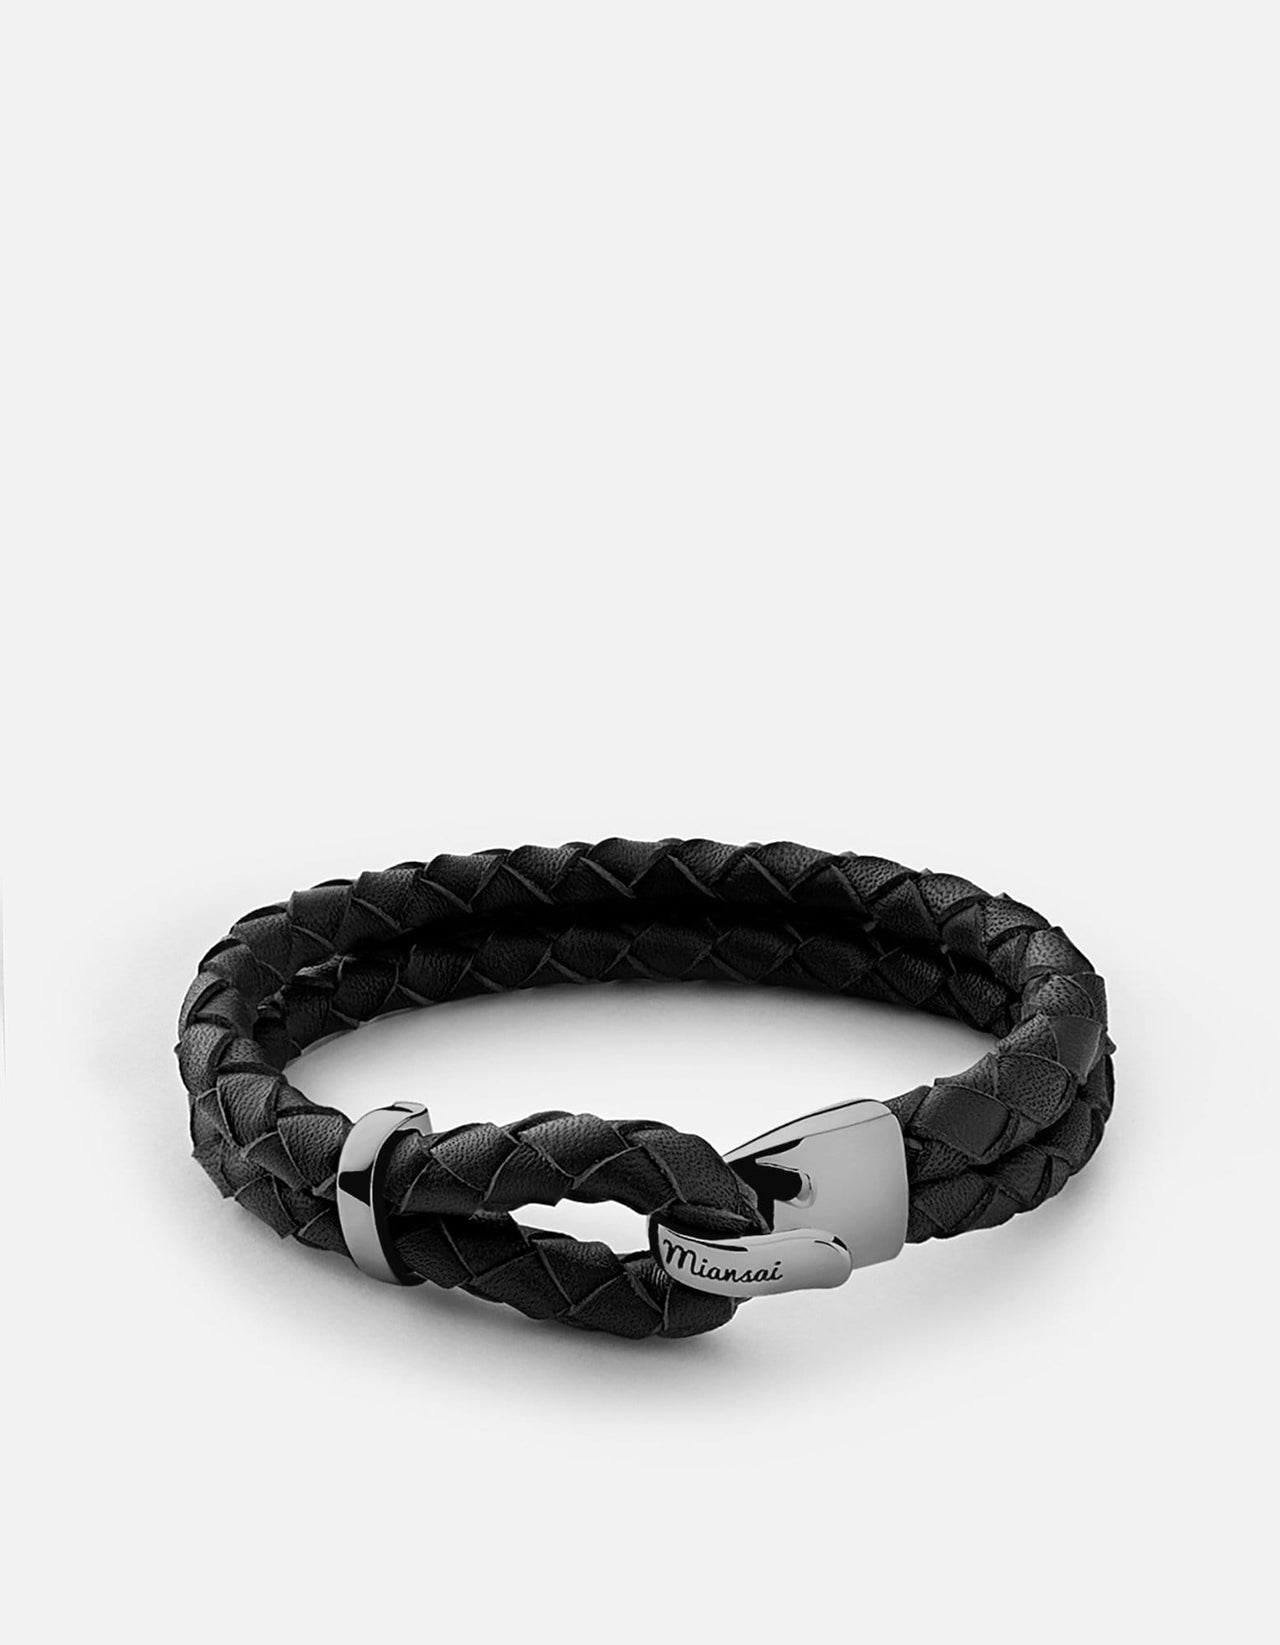 Men's Stainless Steel Black Leather Bracelet Hand-Braided - SSLB113